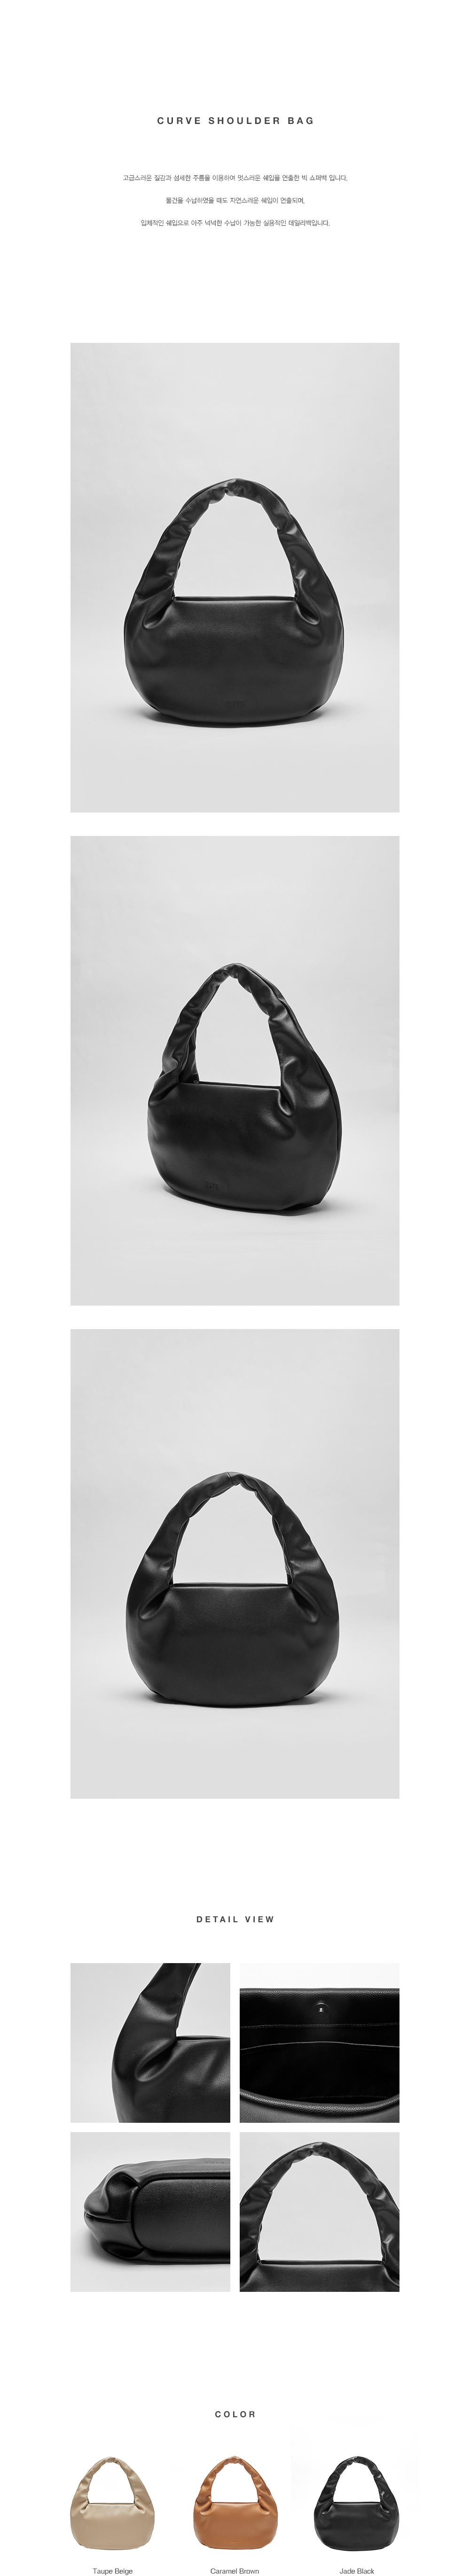 BBYB Curve Shoulder Bag (Jade Black)